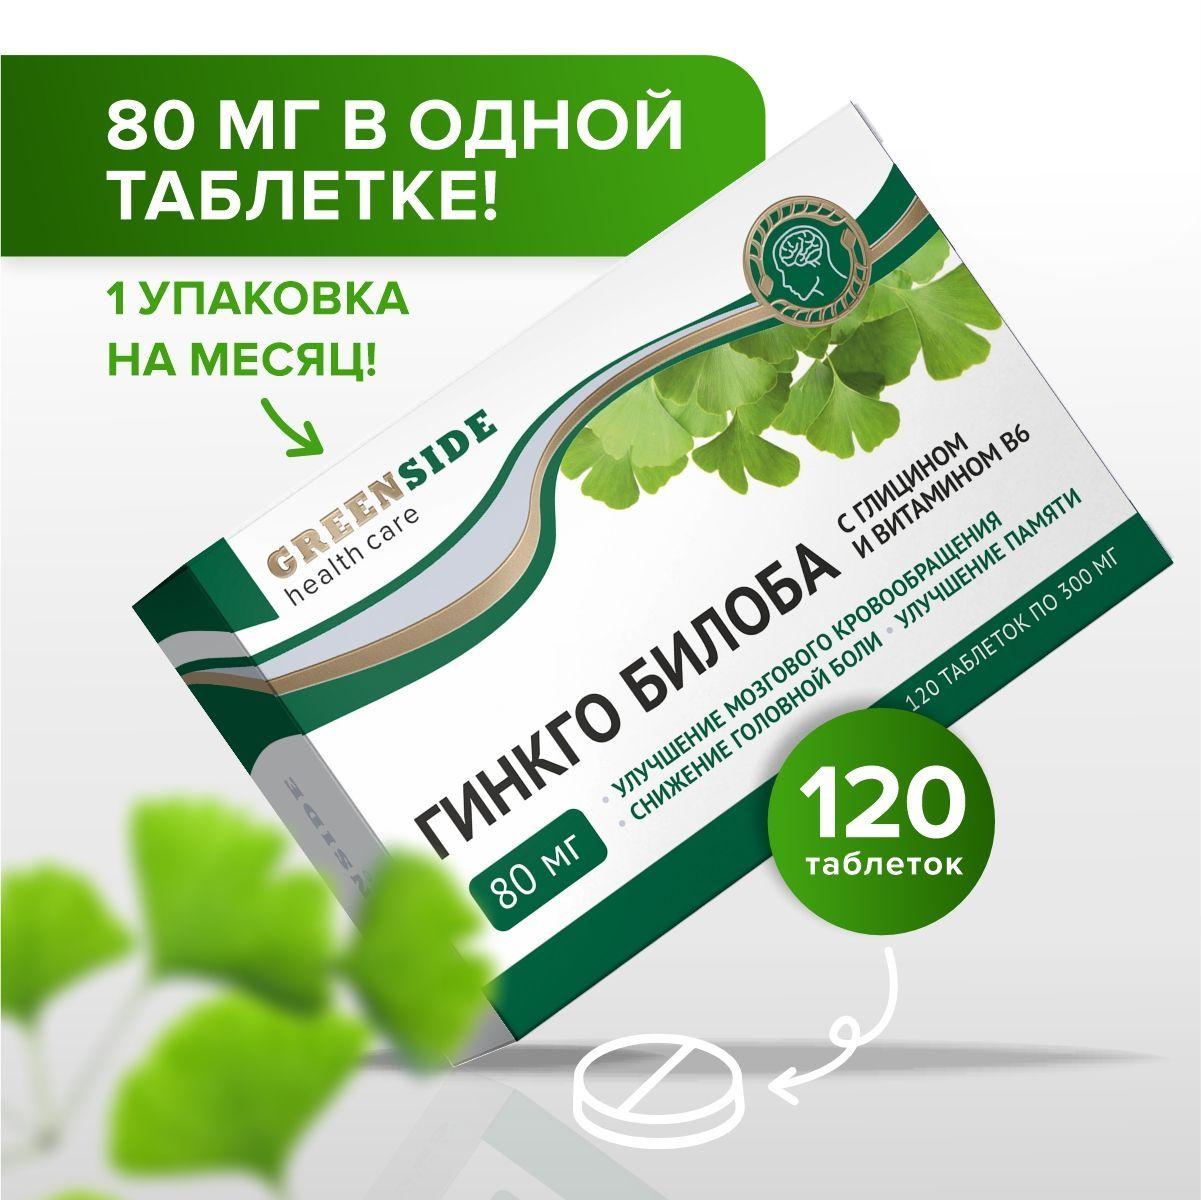 Green SIDE | Гинкго билоба 80 мг с глицином и витамином В6 для улучшения памяти, концентрации внимания улучшения мозгового кровообращения при умственных нагрузках, 300 мг, таб №120